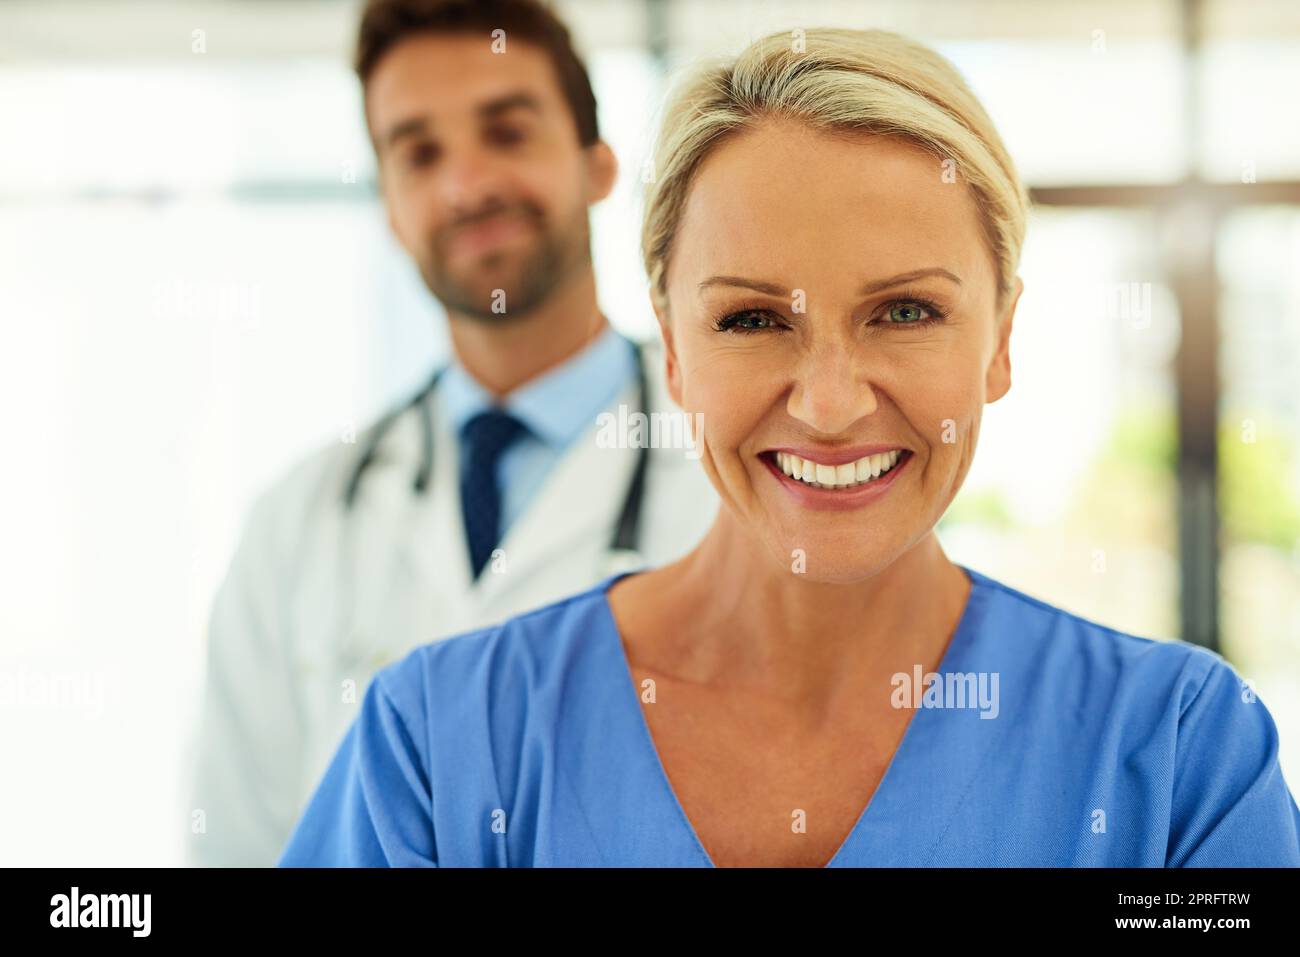 Ich habe eine Karriere aus Mitgefühl gemacht. Porträt zweier glücklicher Heilpraktiker, die in einem Krankenhaus zusammen posieren. Stockfoto